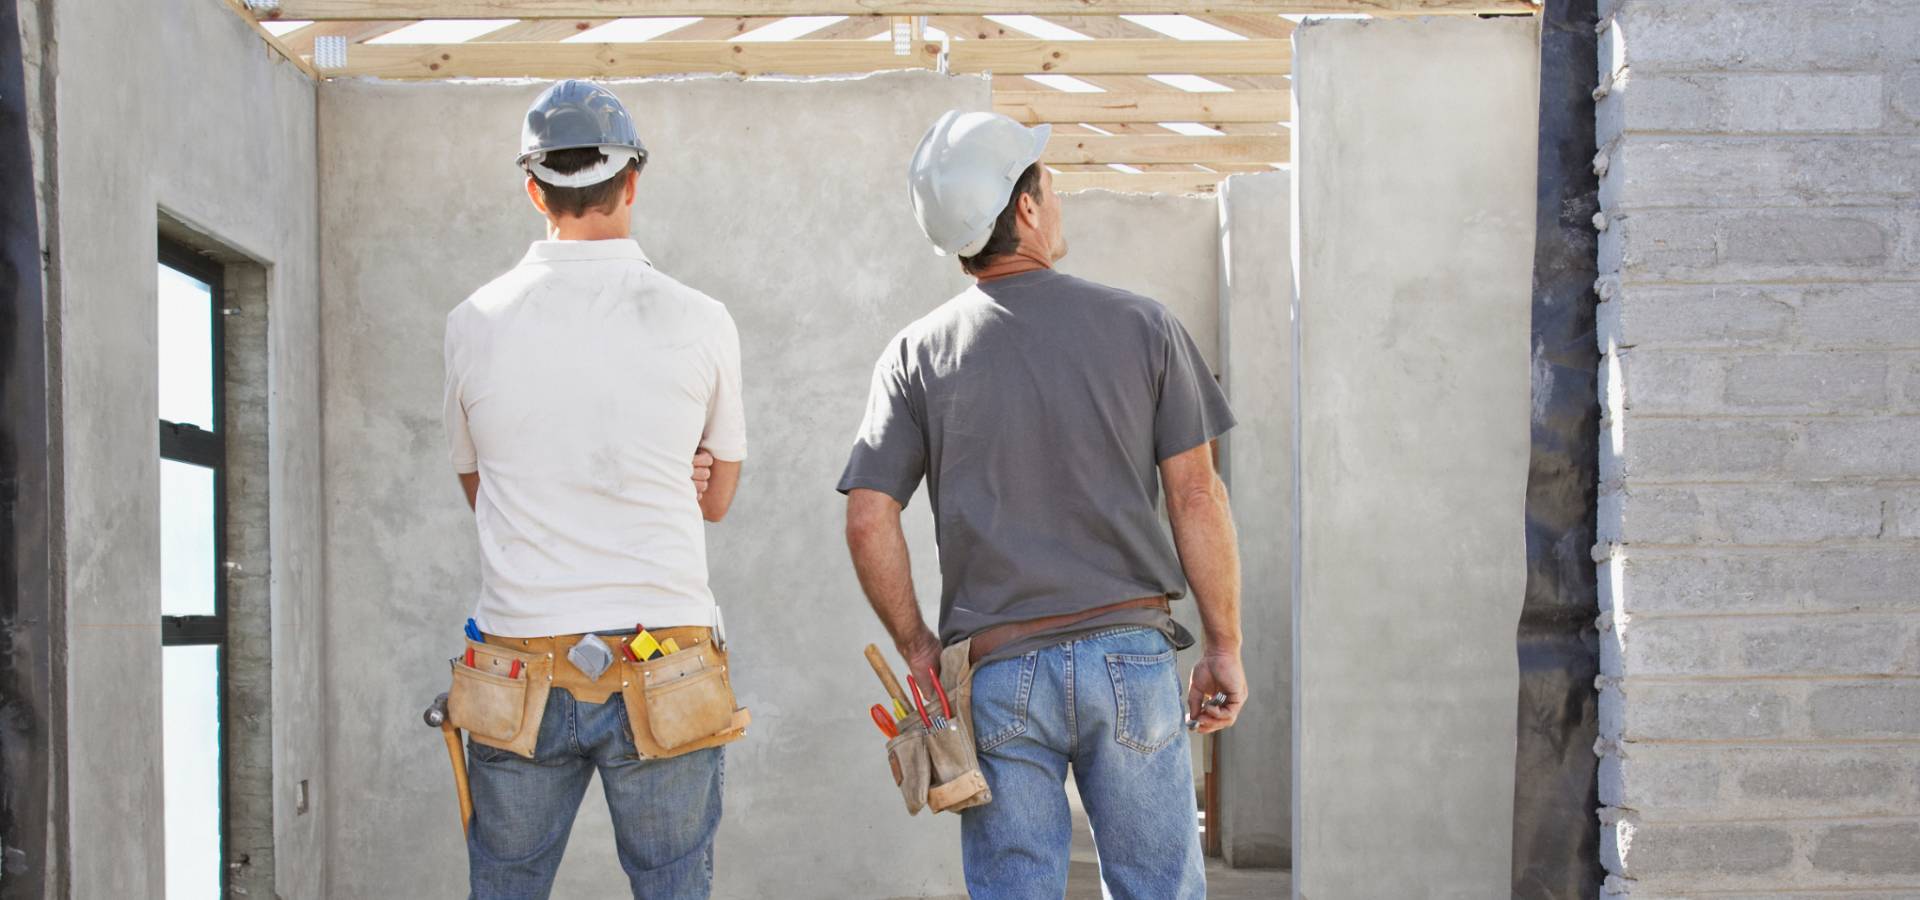 Förderung der Beschäftigung von Migranten im Bausektor 